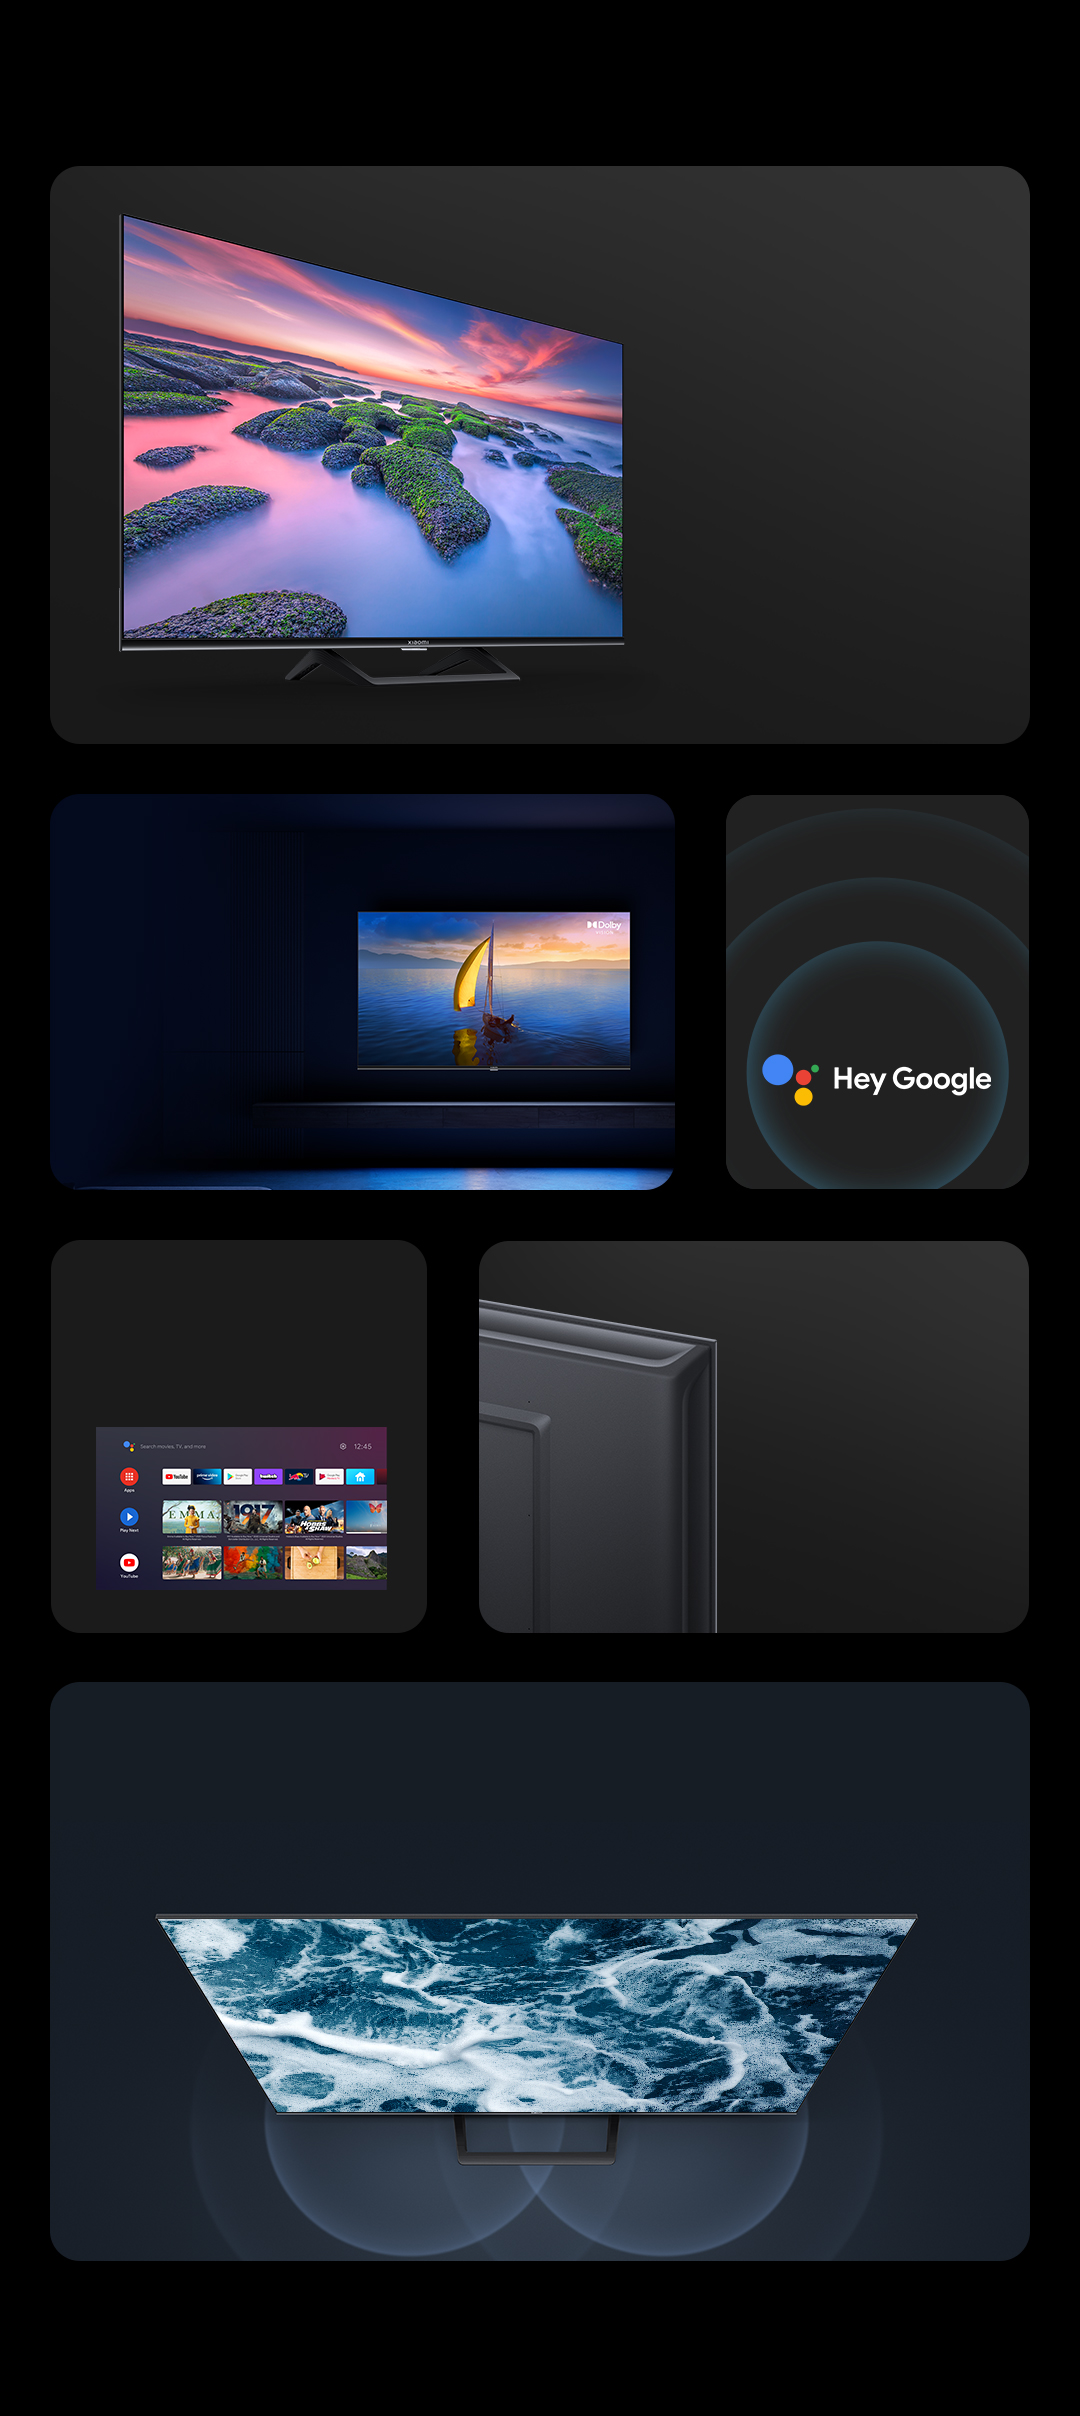 Una televisión de regalo! Xiaomi 13T + Xiaomi TV A2 43 en oferta